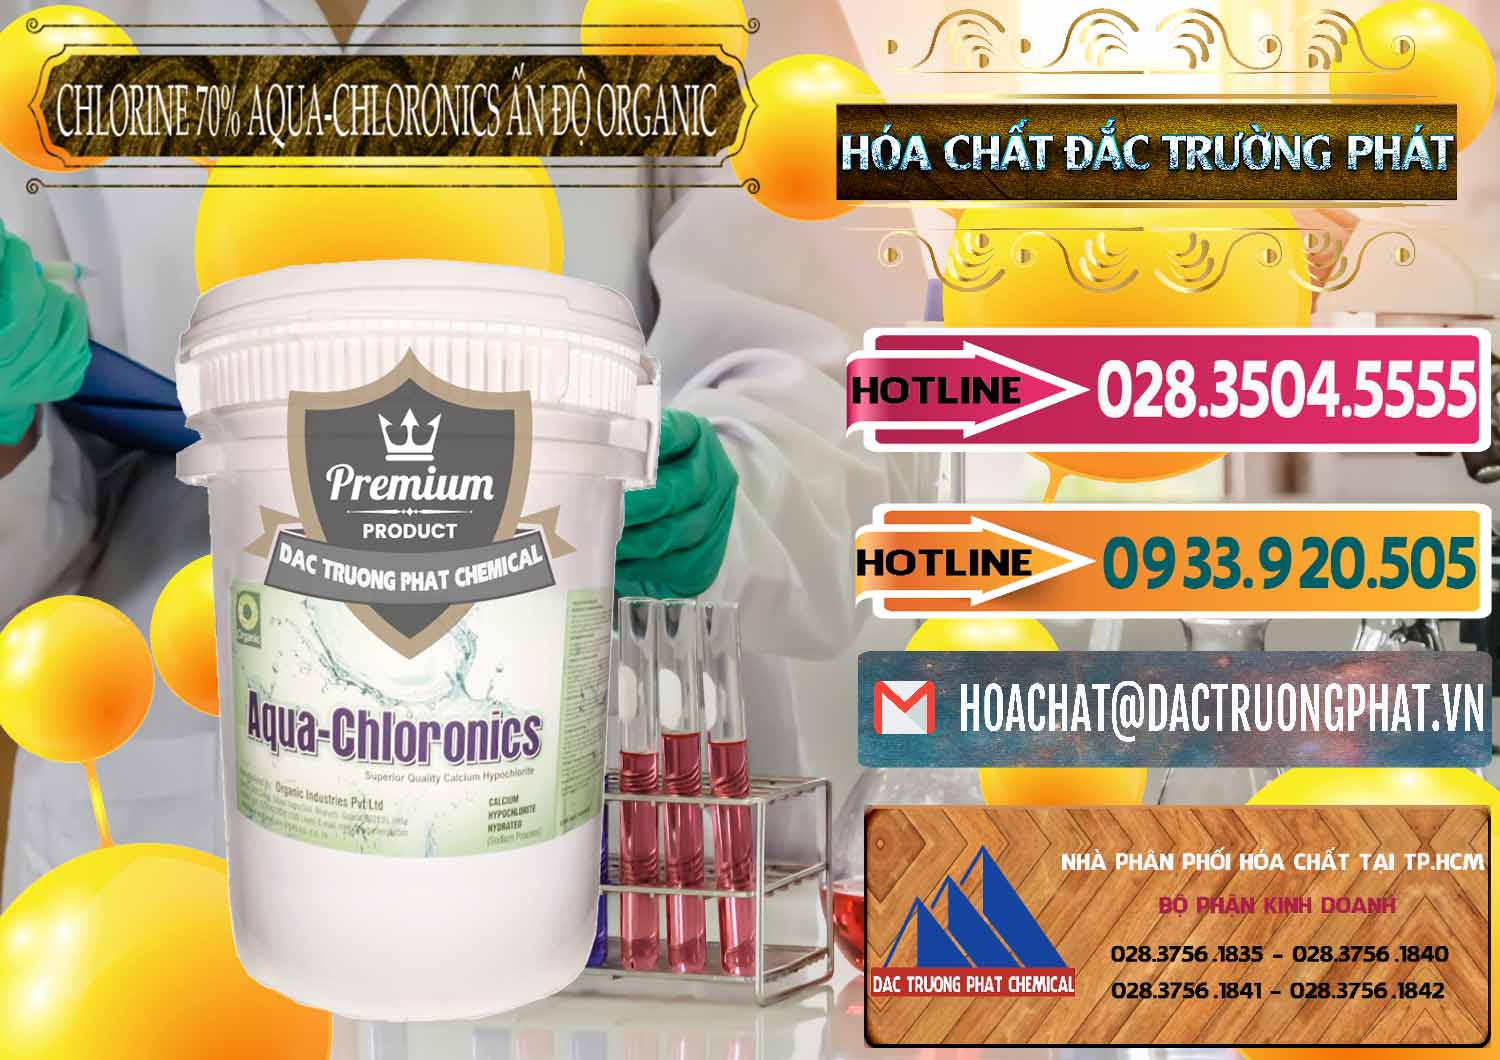 Công ty chuyên cung ứng _ bán Chlorine – Clorin 70% Aqua-Chloronics Ấn Độ Organic India - 0211 - Chuyên phân phối - cung ứng hóa chất tại TP.HCM - dactruongphat.vn